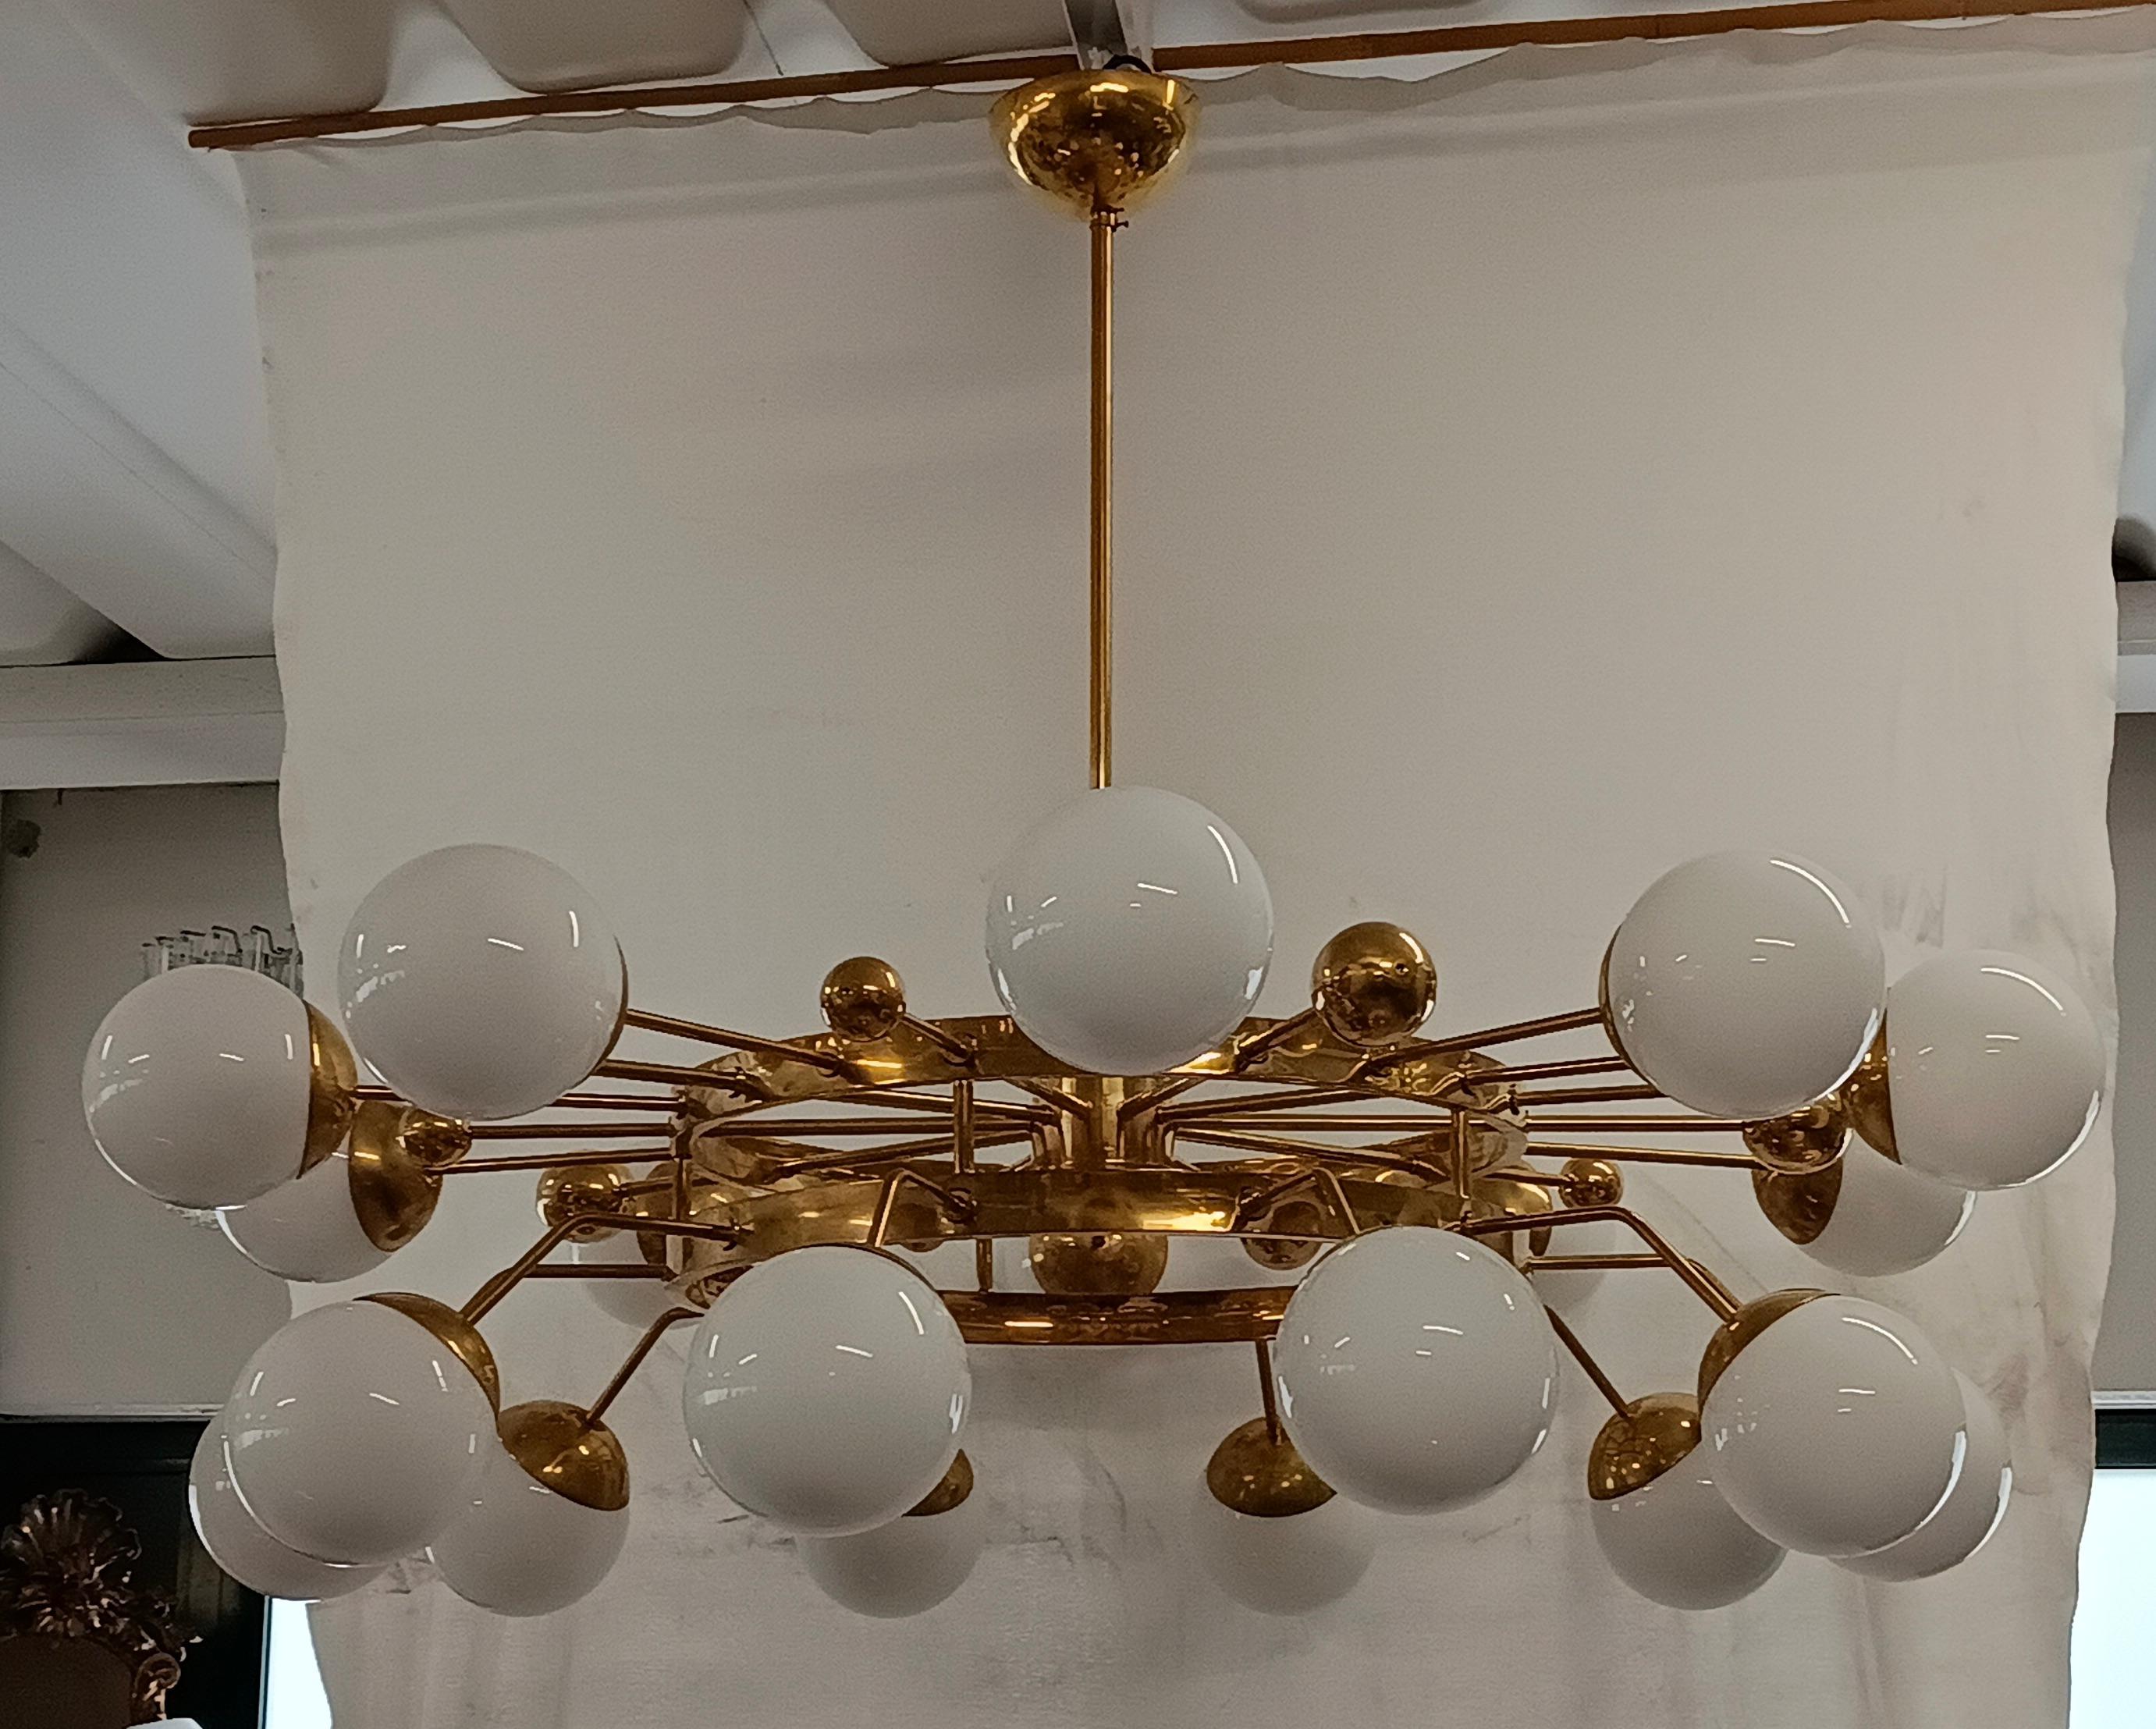 Sputnik circulaire particulier, avec structure en laiton et sphères en verre de Murano. Il ressemble à un système de planètes qui gravitent circulairement. Un lustre au design unique en son genre, avec beaucoup de laiton et du verre blanc